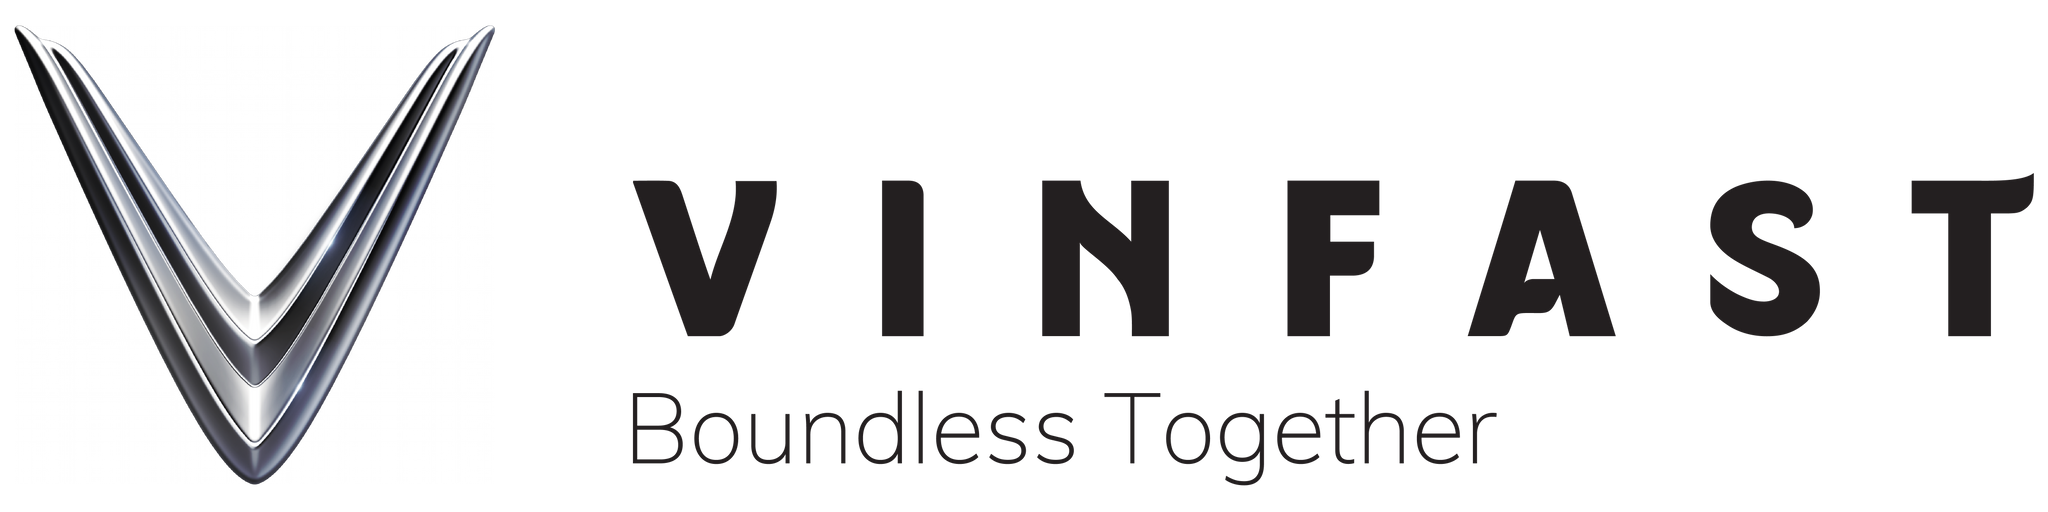 VinFast – COMING SOON logo